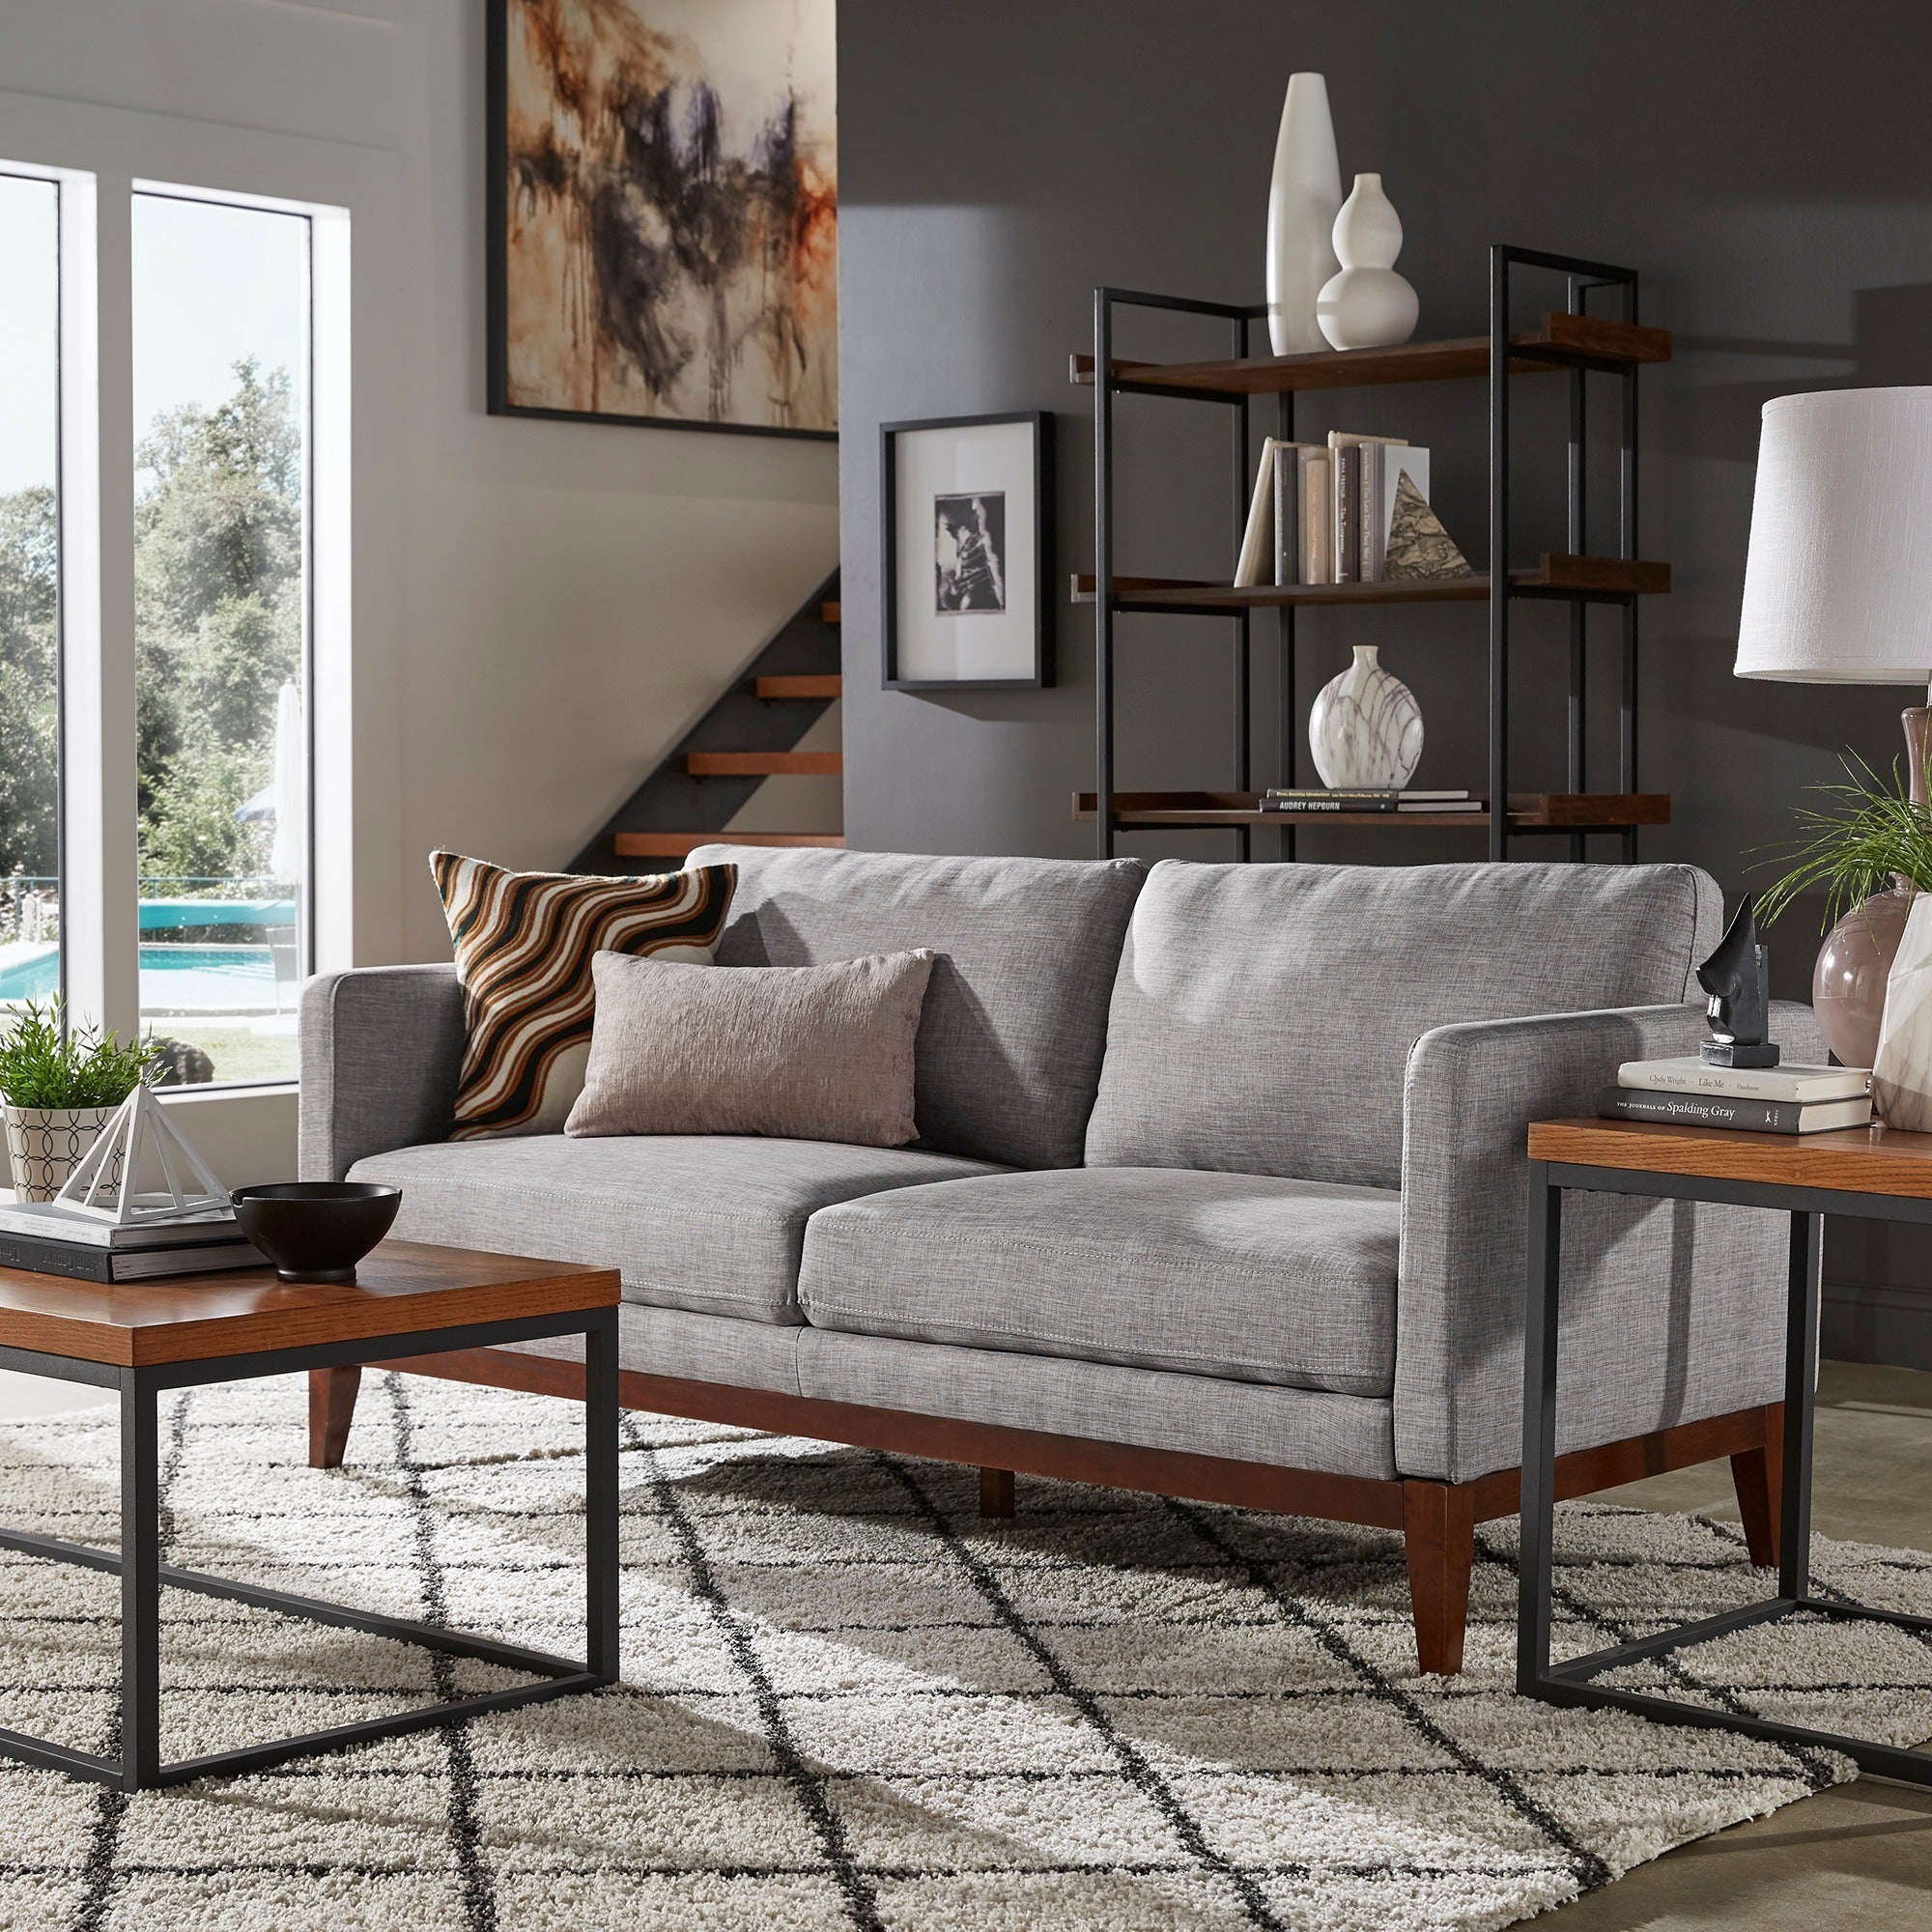 Linen Upholstered Sofa